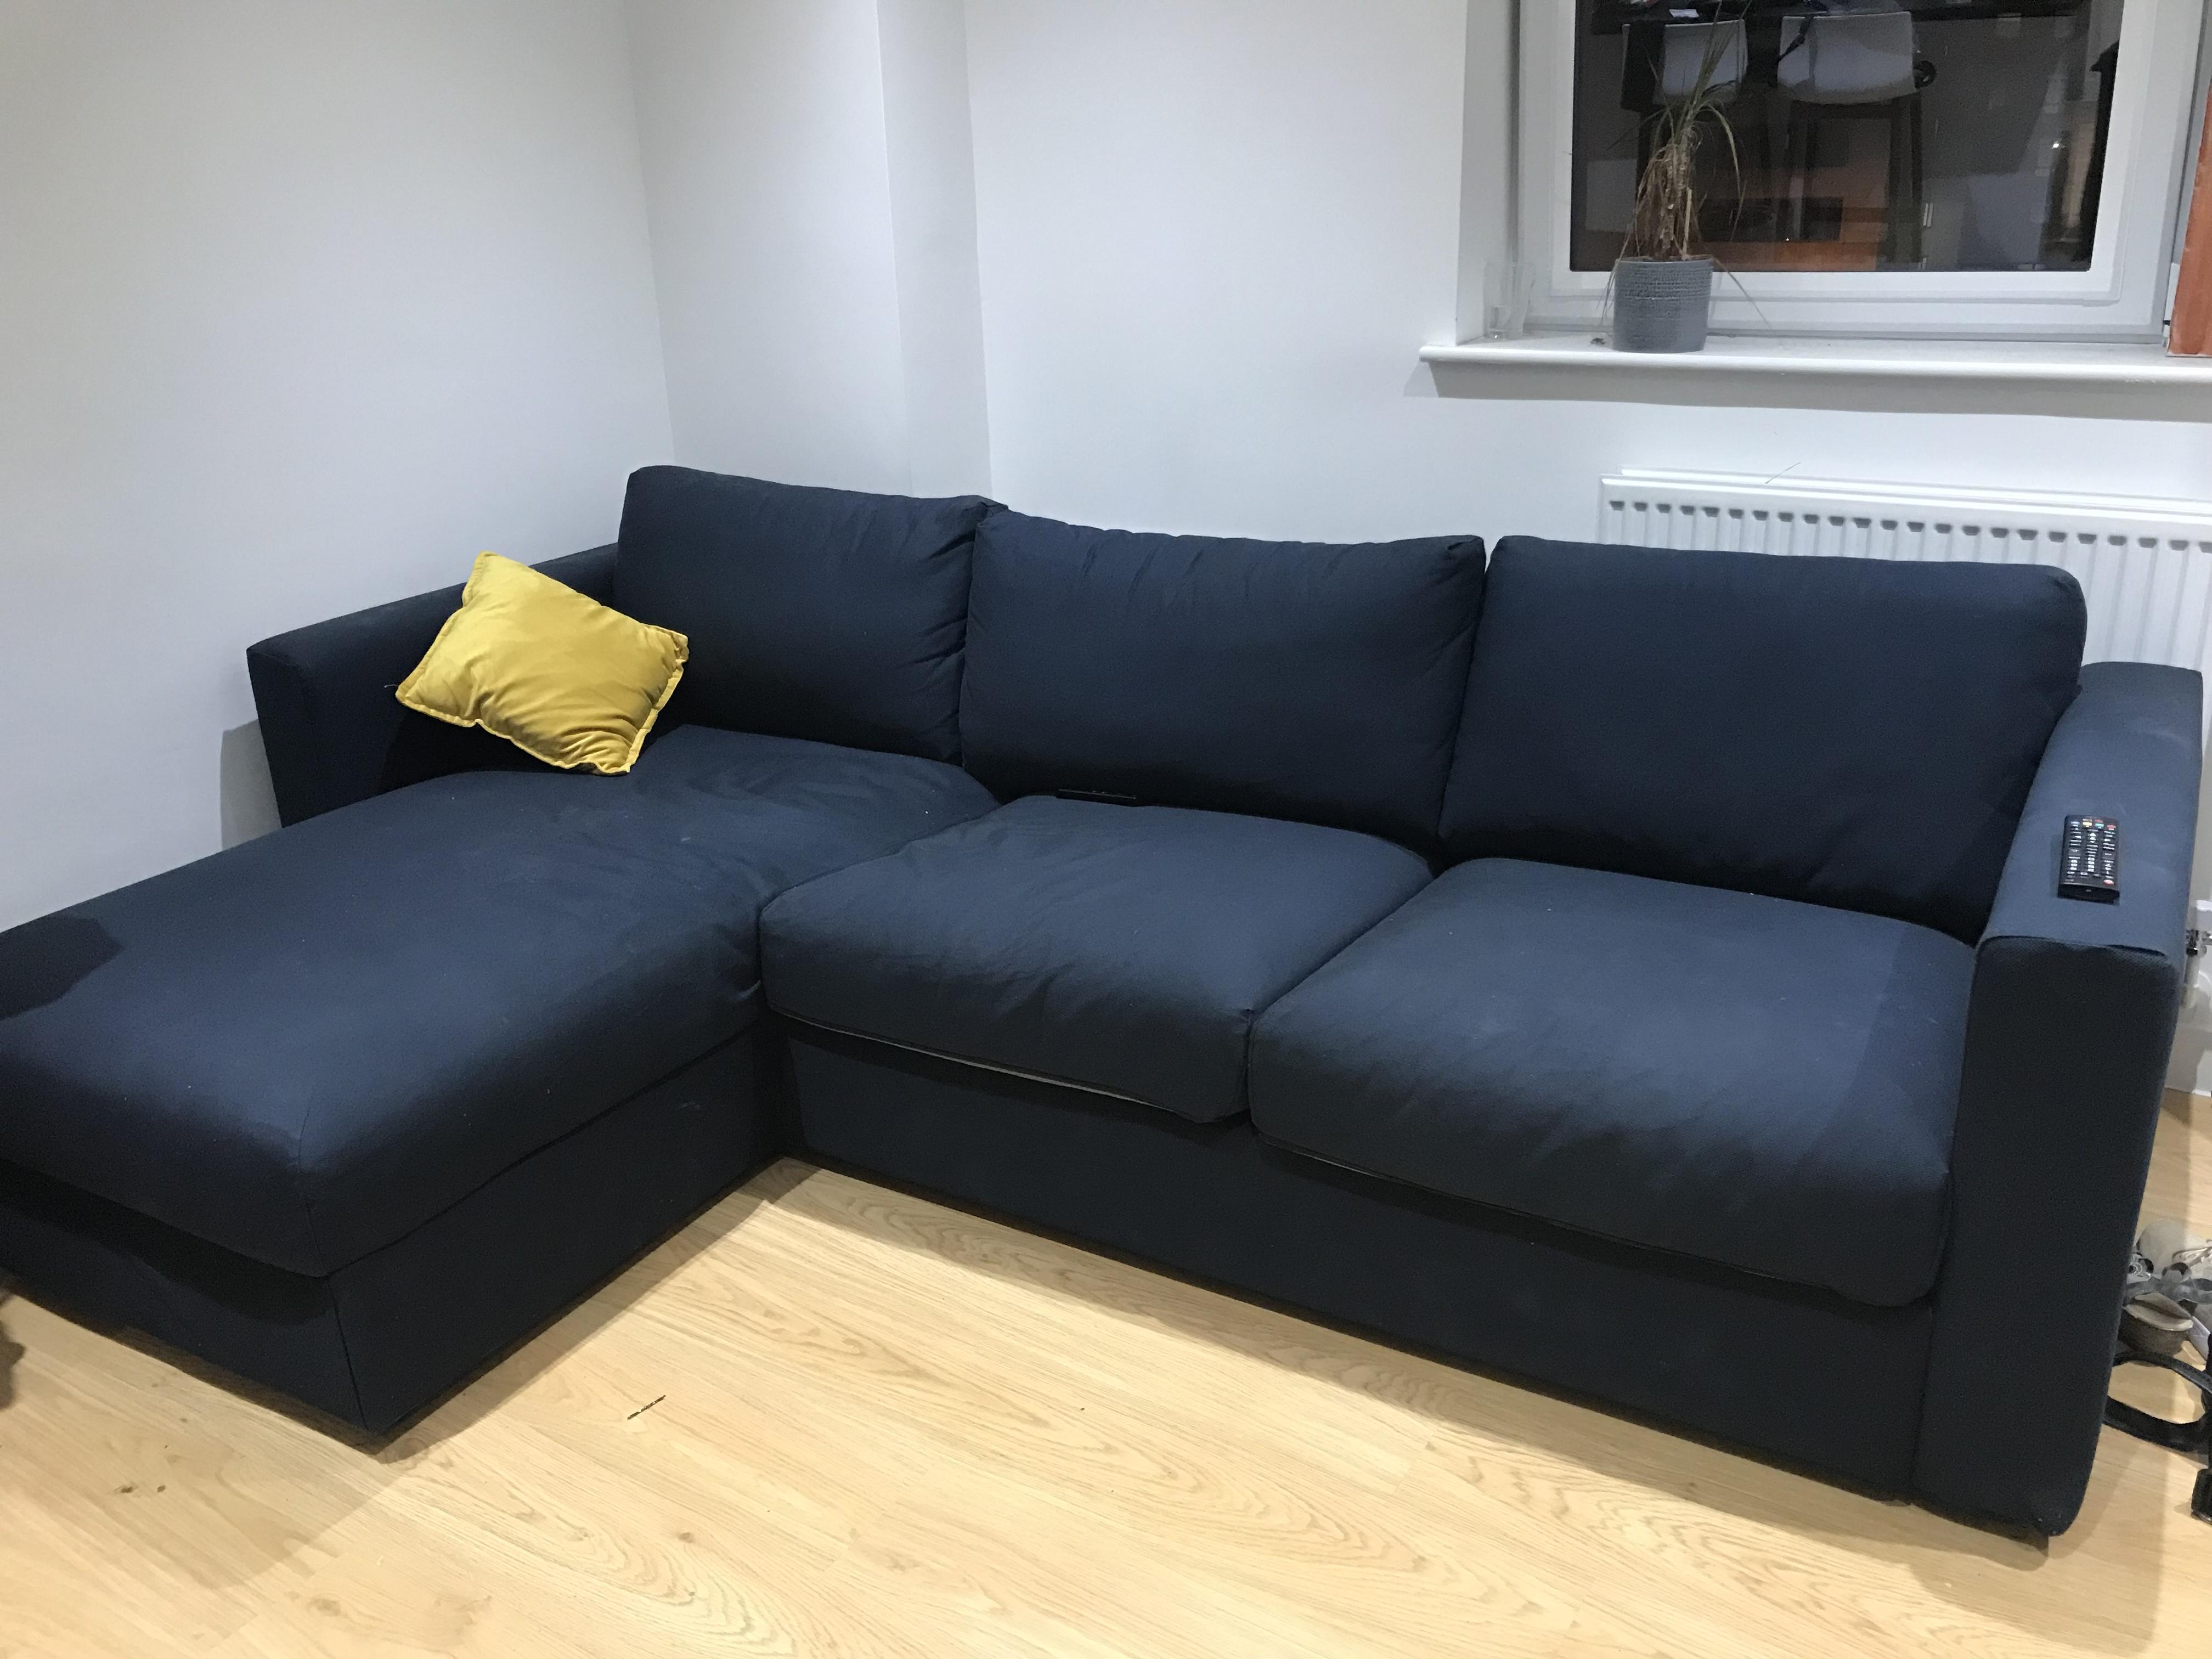 corner sofa beds at ikea